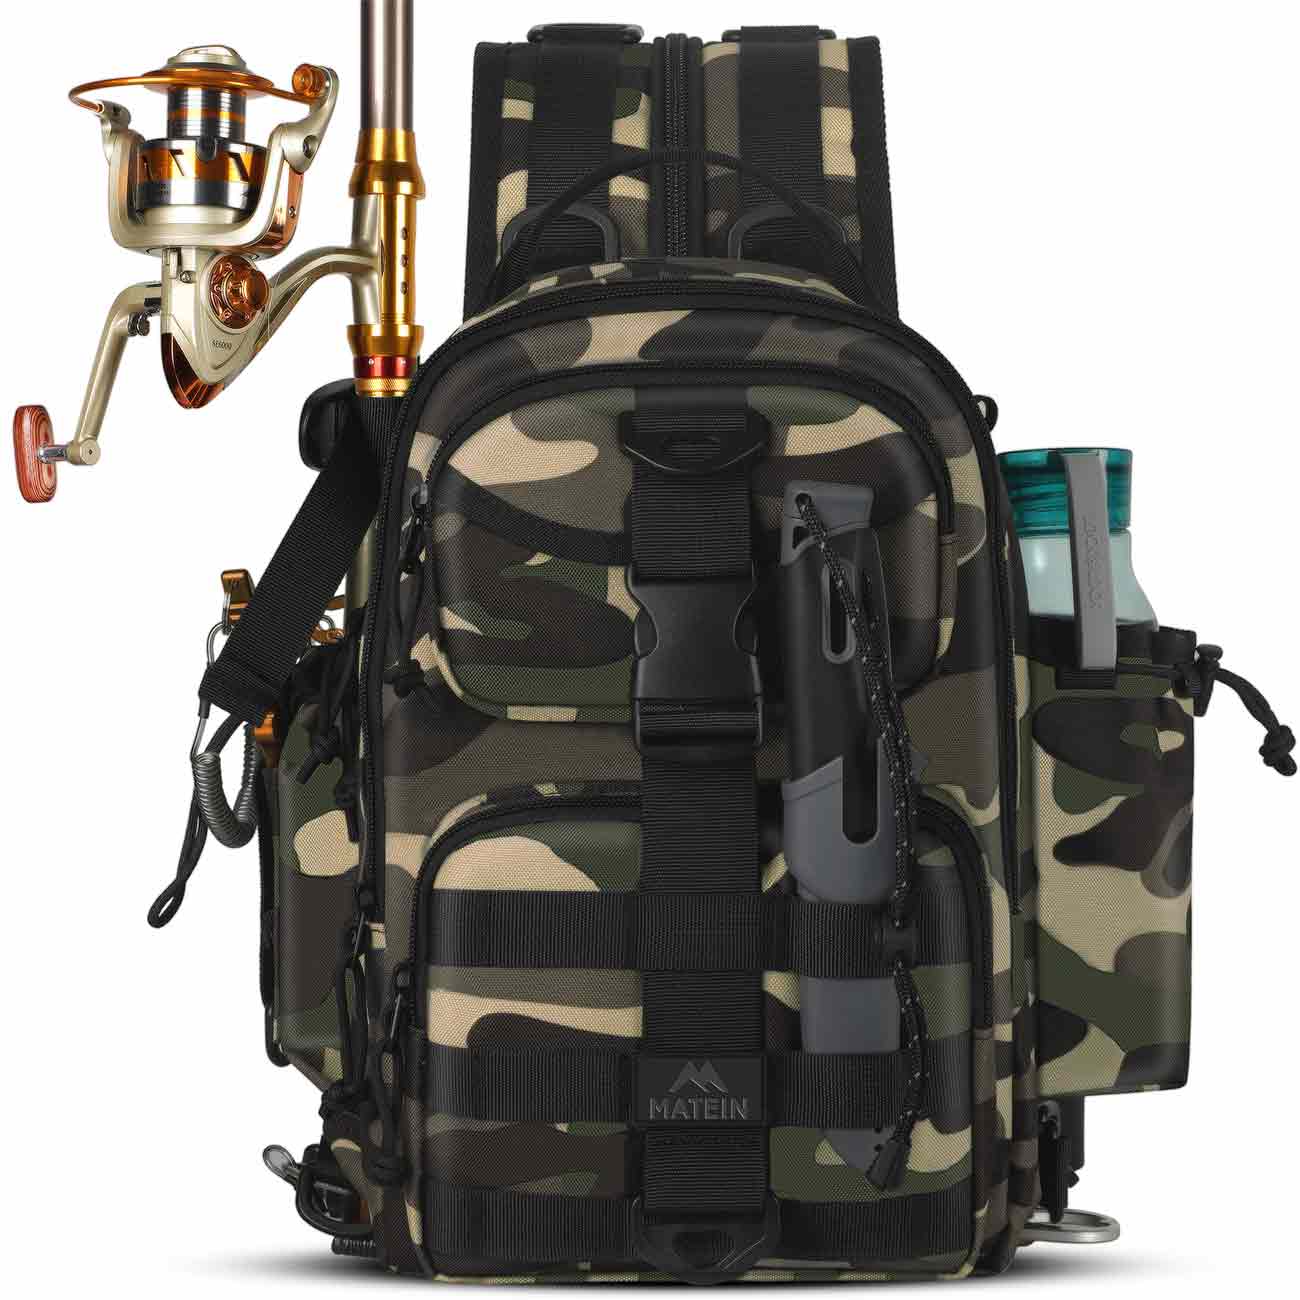 Matein Fishing Tackle Backpack-fishing tackle bag